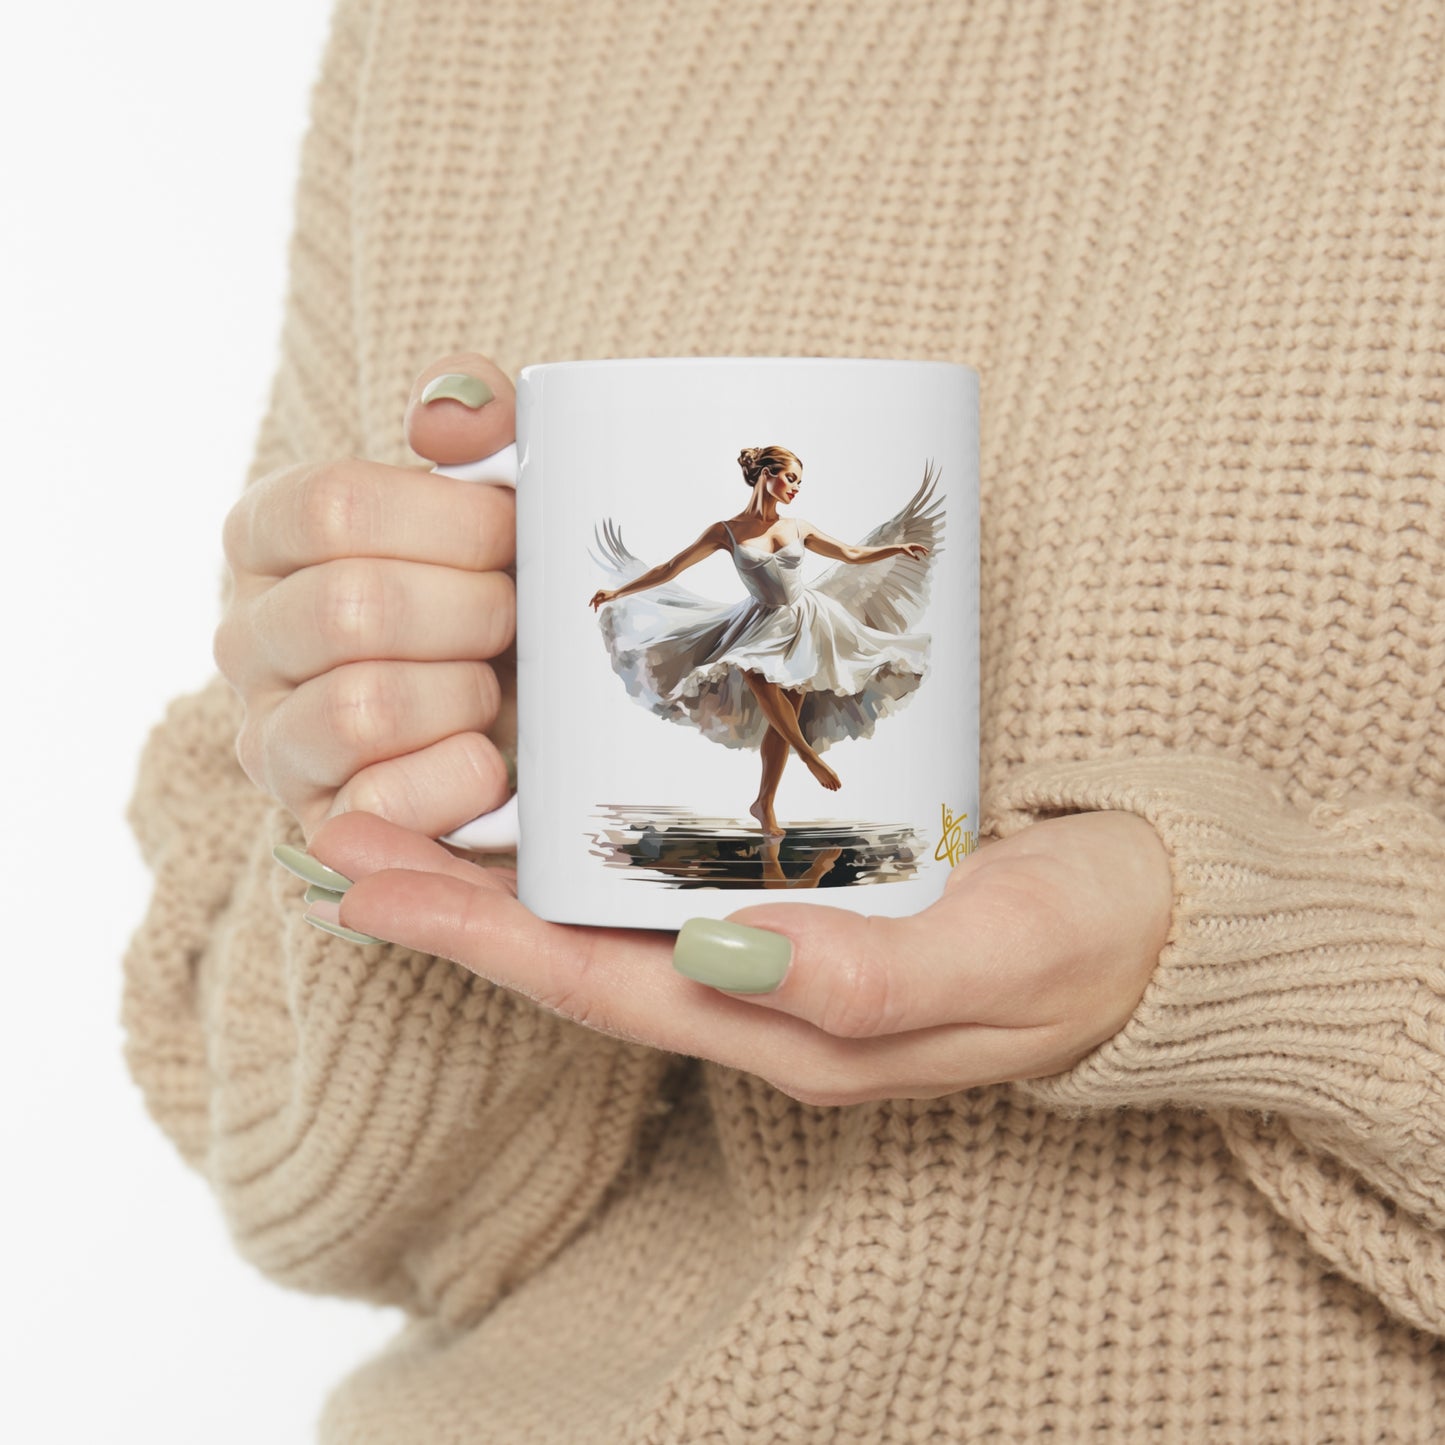 Petit Attitude Ballerina Ceramic Mug